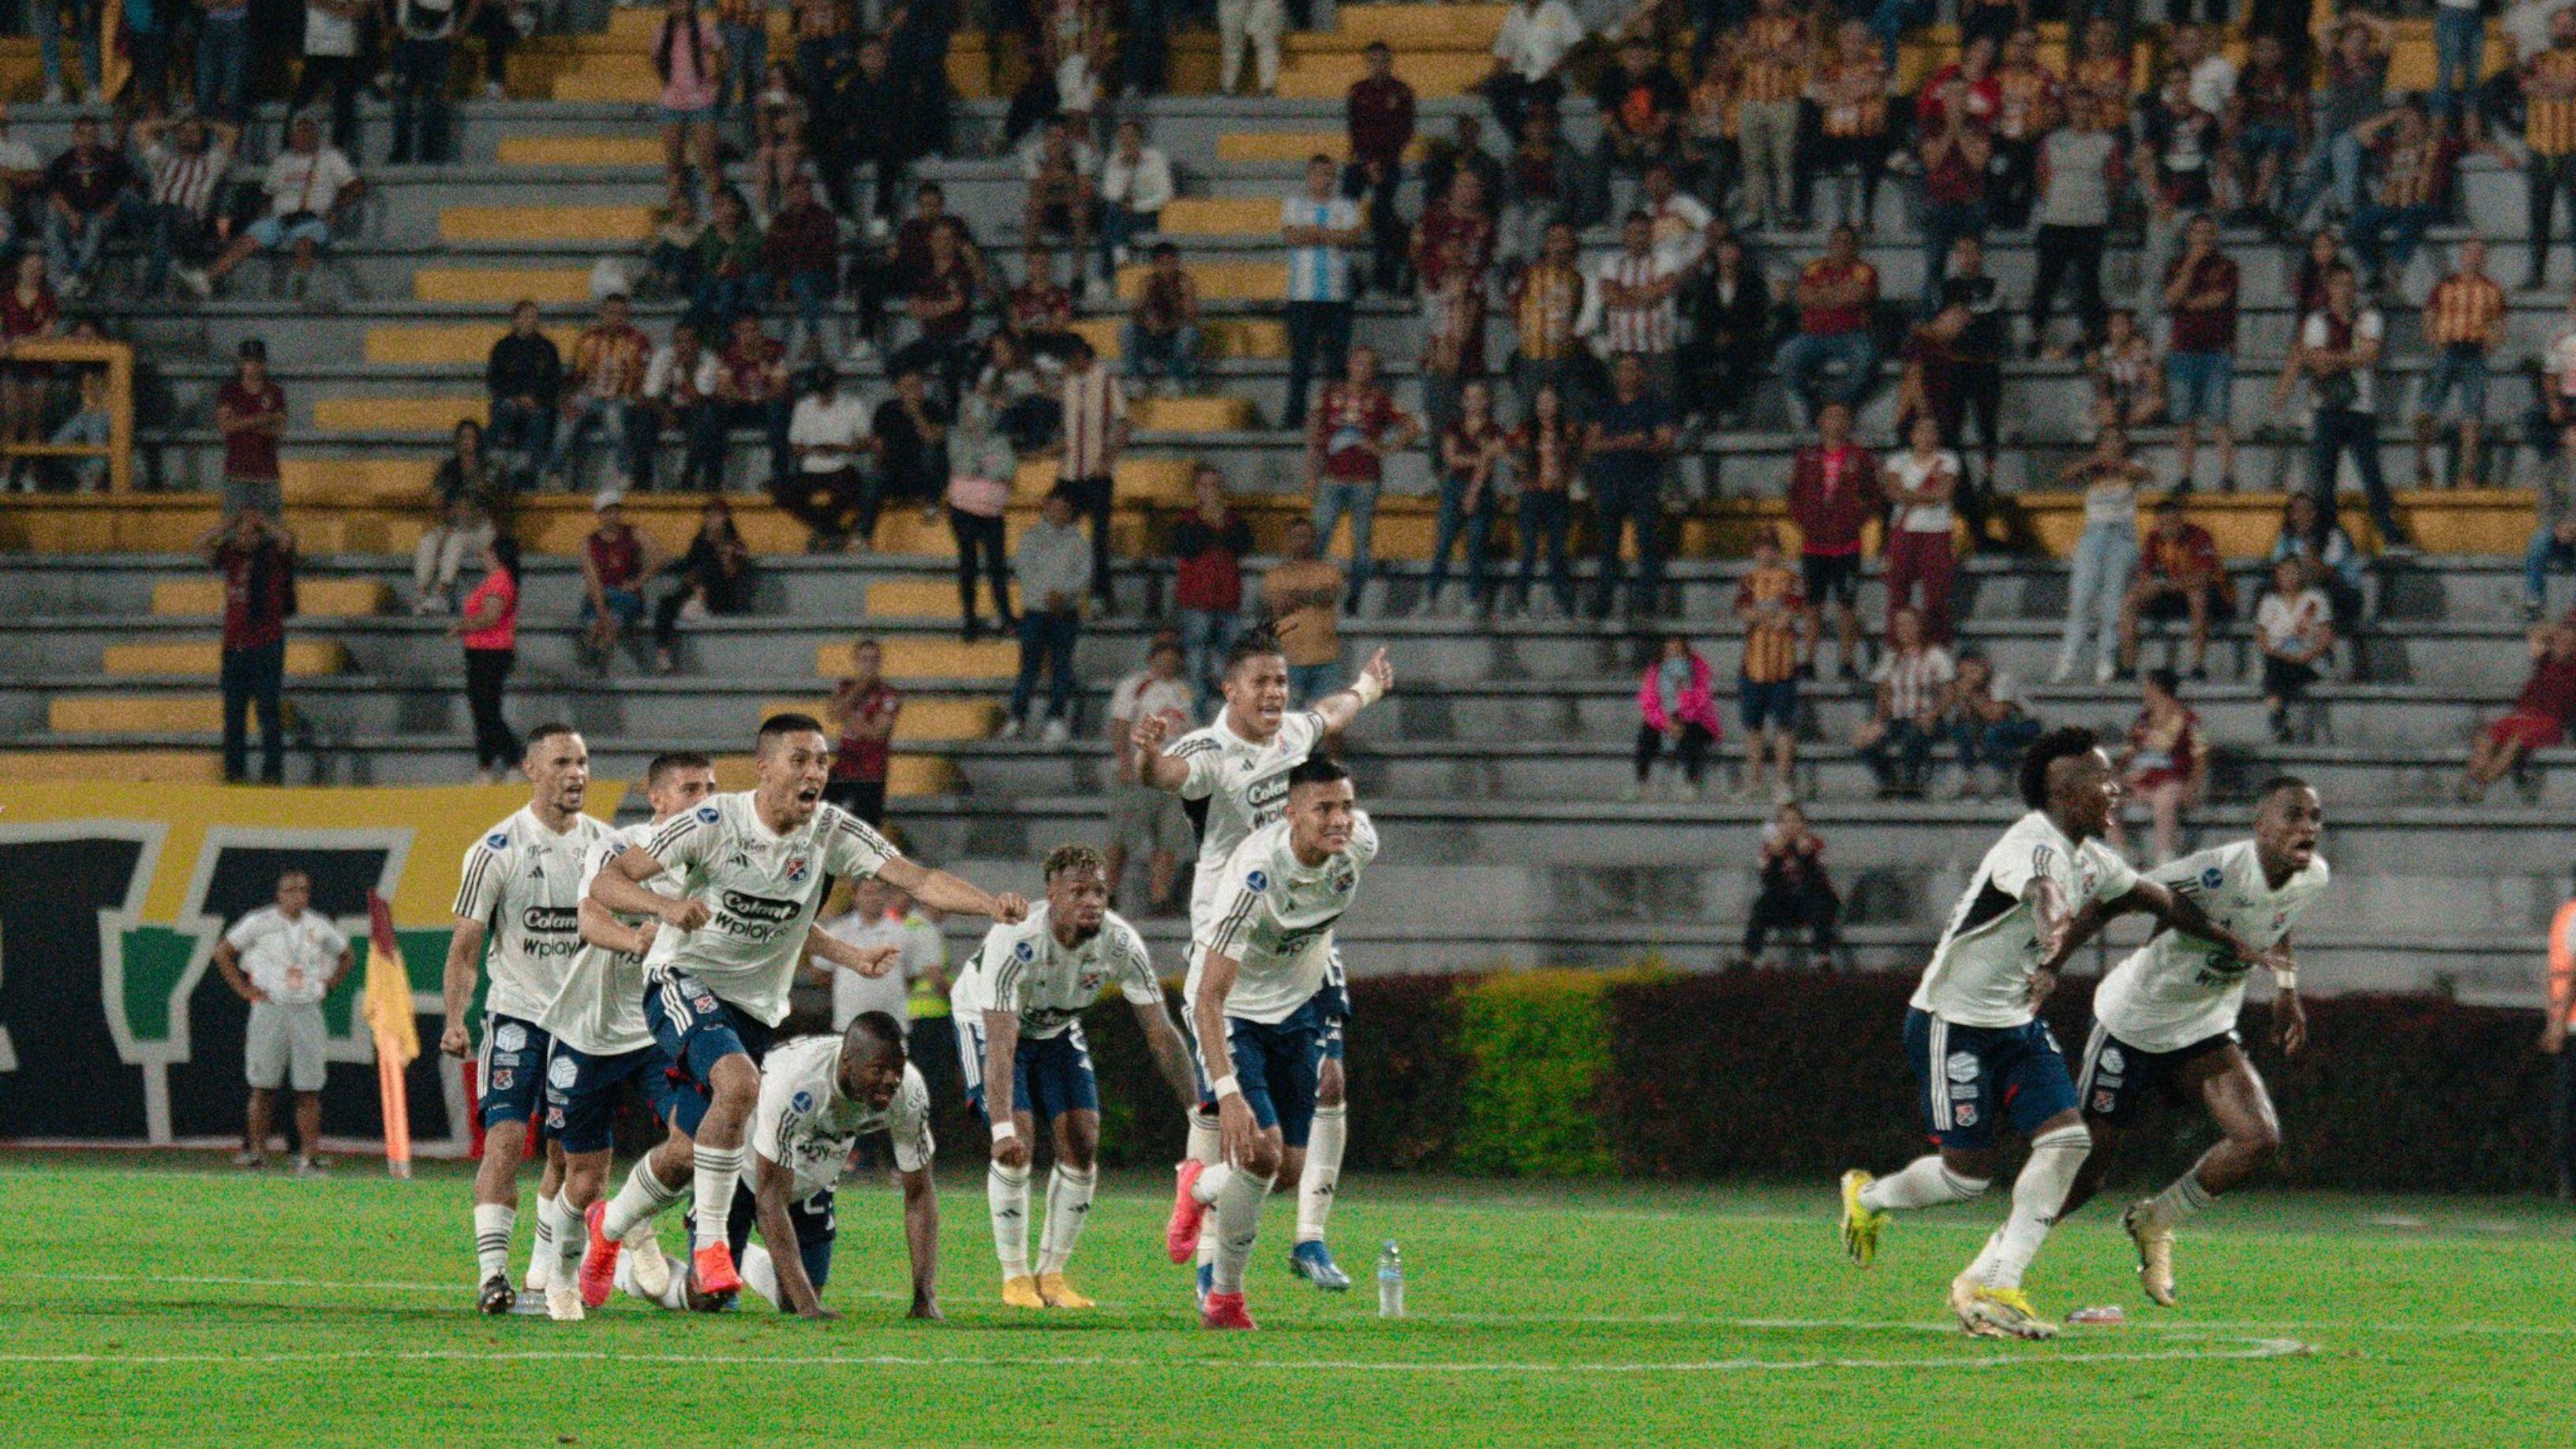 Los jugadores de Independiente Medellín celebran el pase a la fase de grupos de la Copa Sudamericana - crédito Independiente Medellín